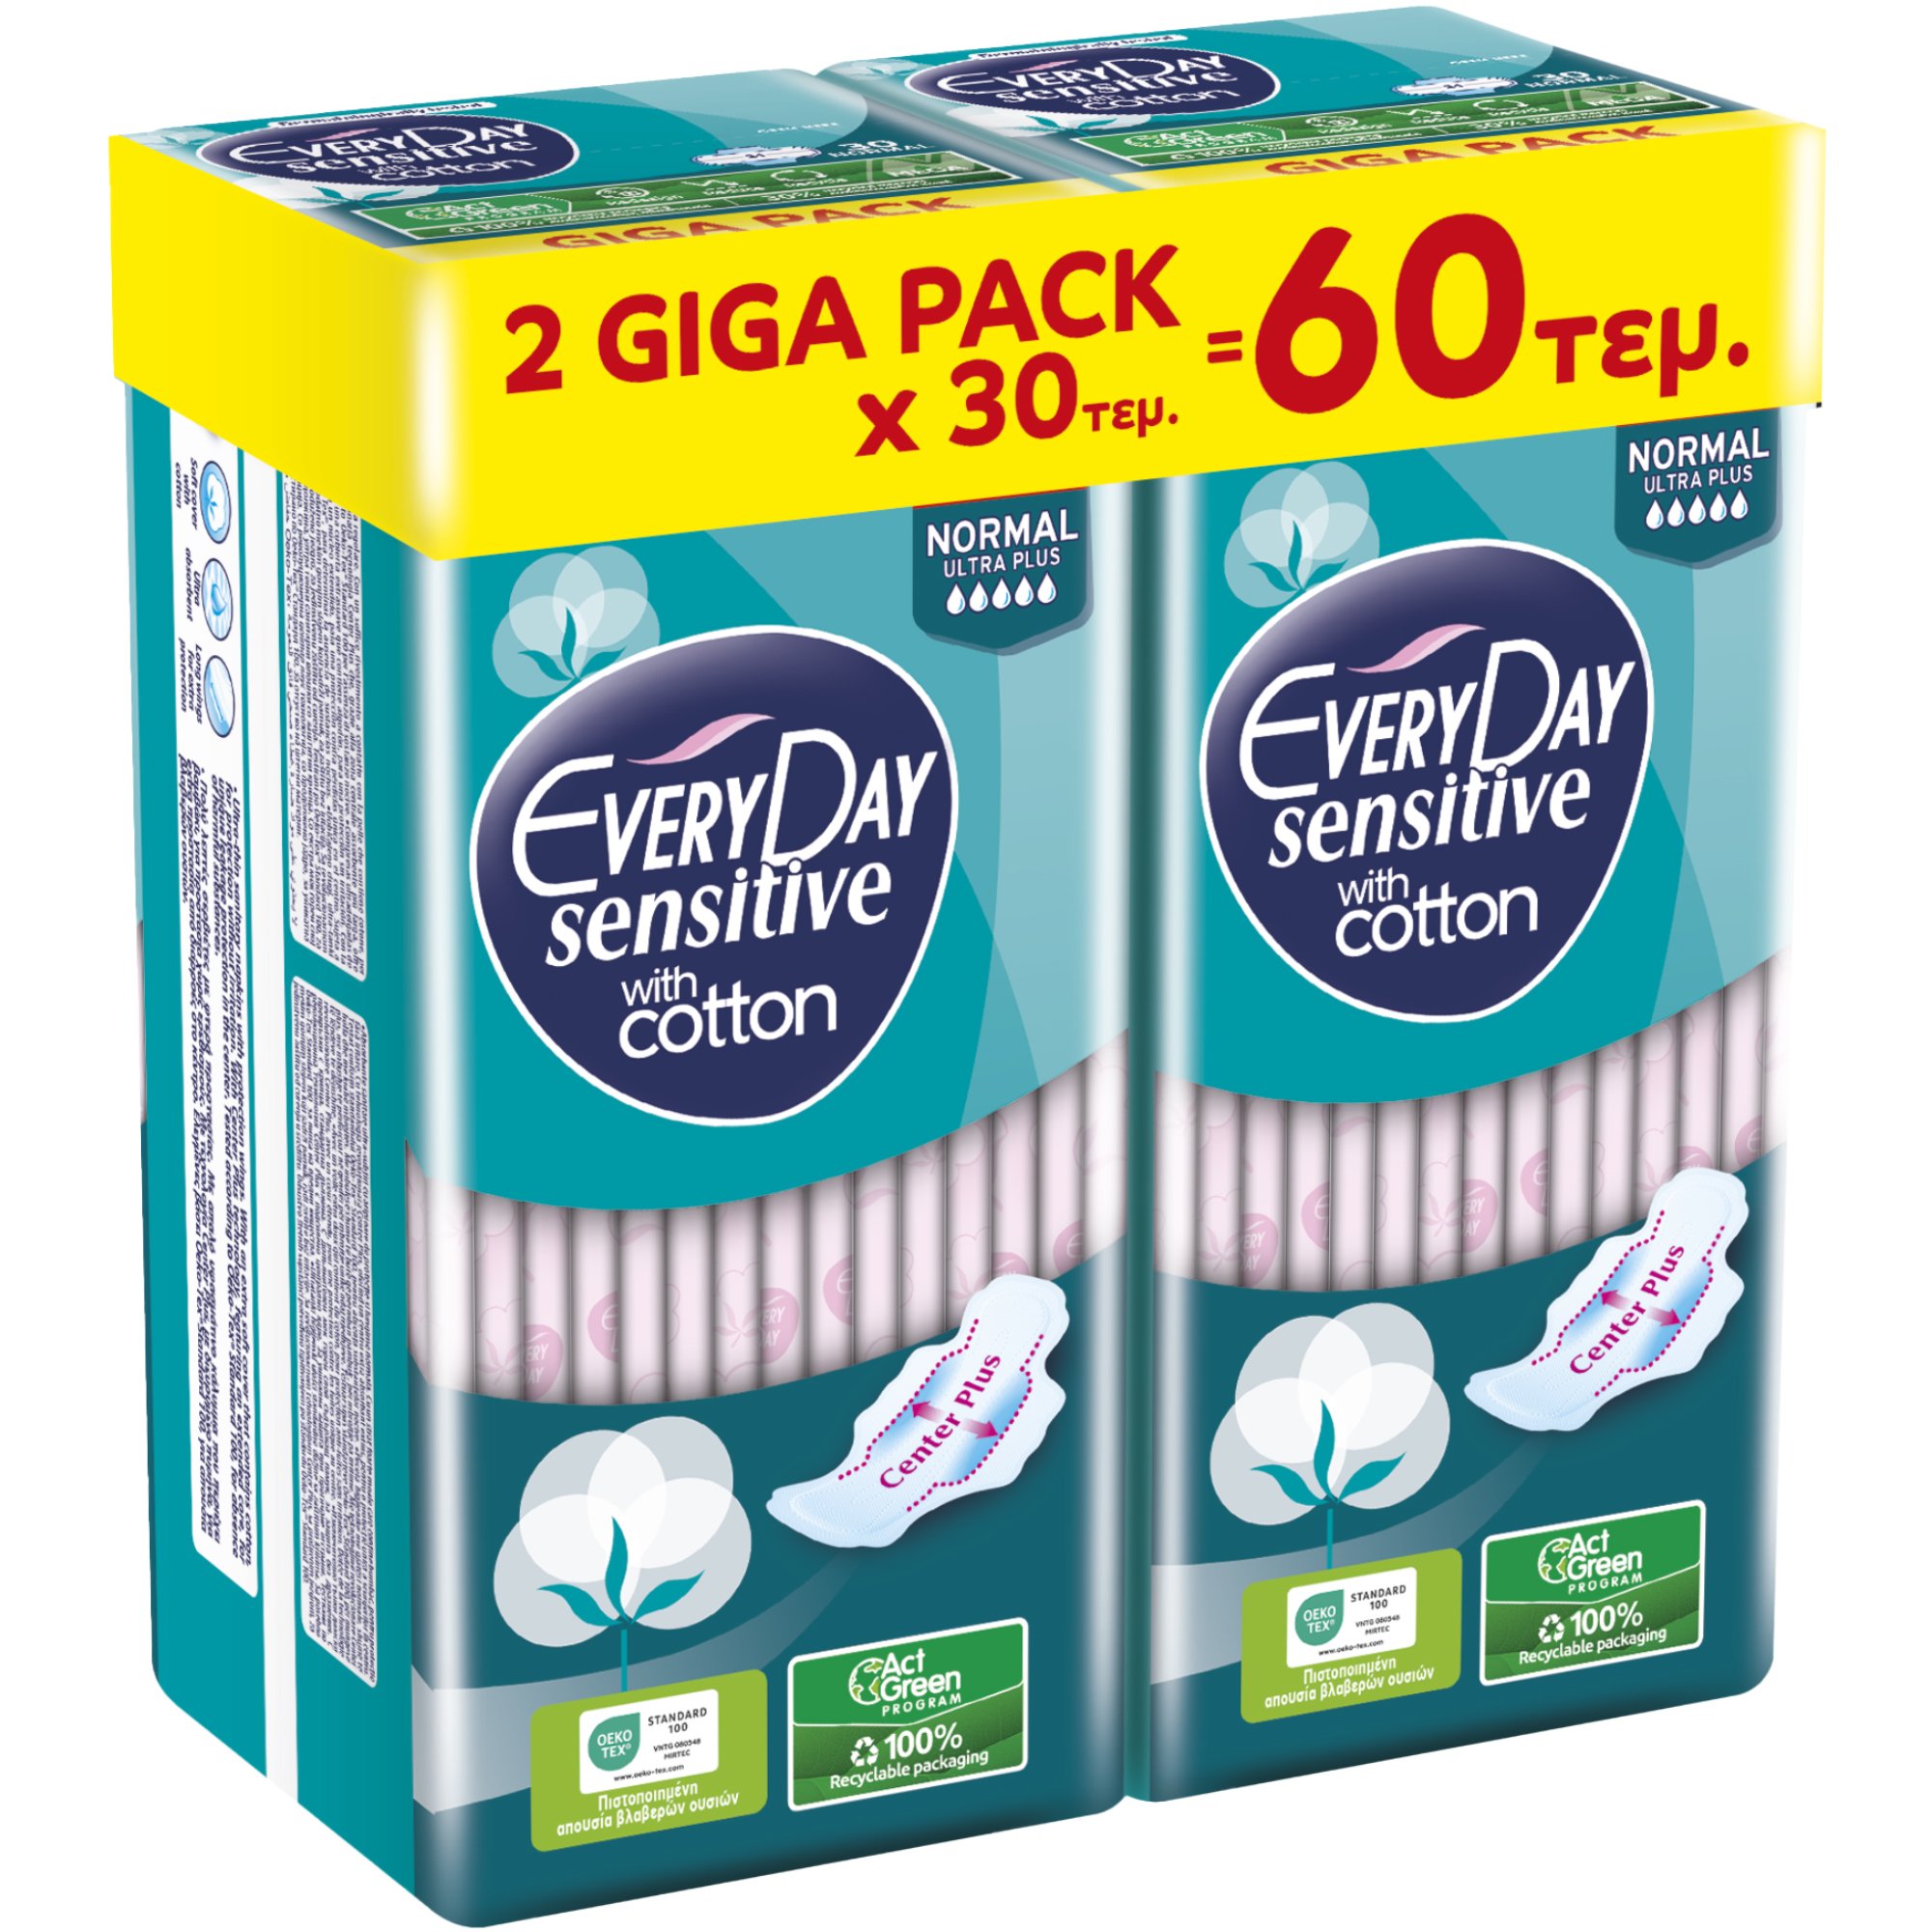 Σετ Every Day Sensitive with Cotton Normal Ultra Plus Giga Pack Λεπτές Σερβιέτες Κανονικού Μήκους με Φτερά Προστασίας & Βαμβάκι για να Αναπνέει το Δέρμα 60 Τεμάχια (2×30 Τεμάχια)